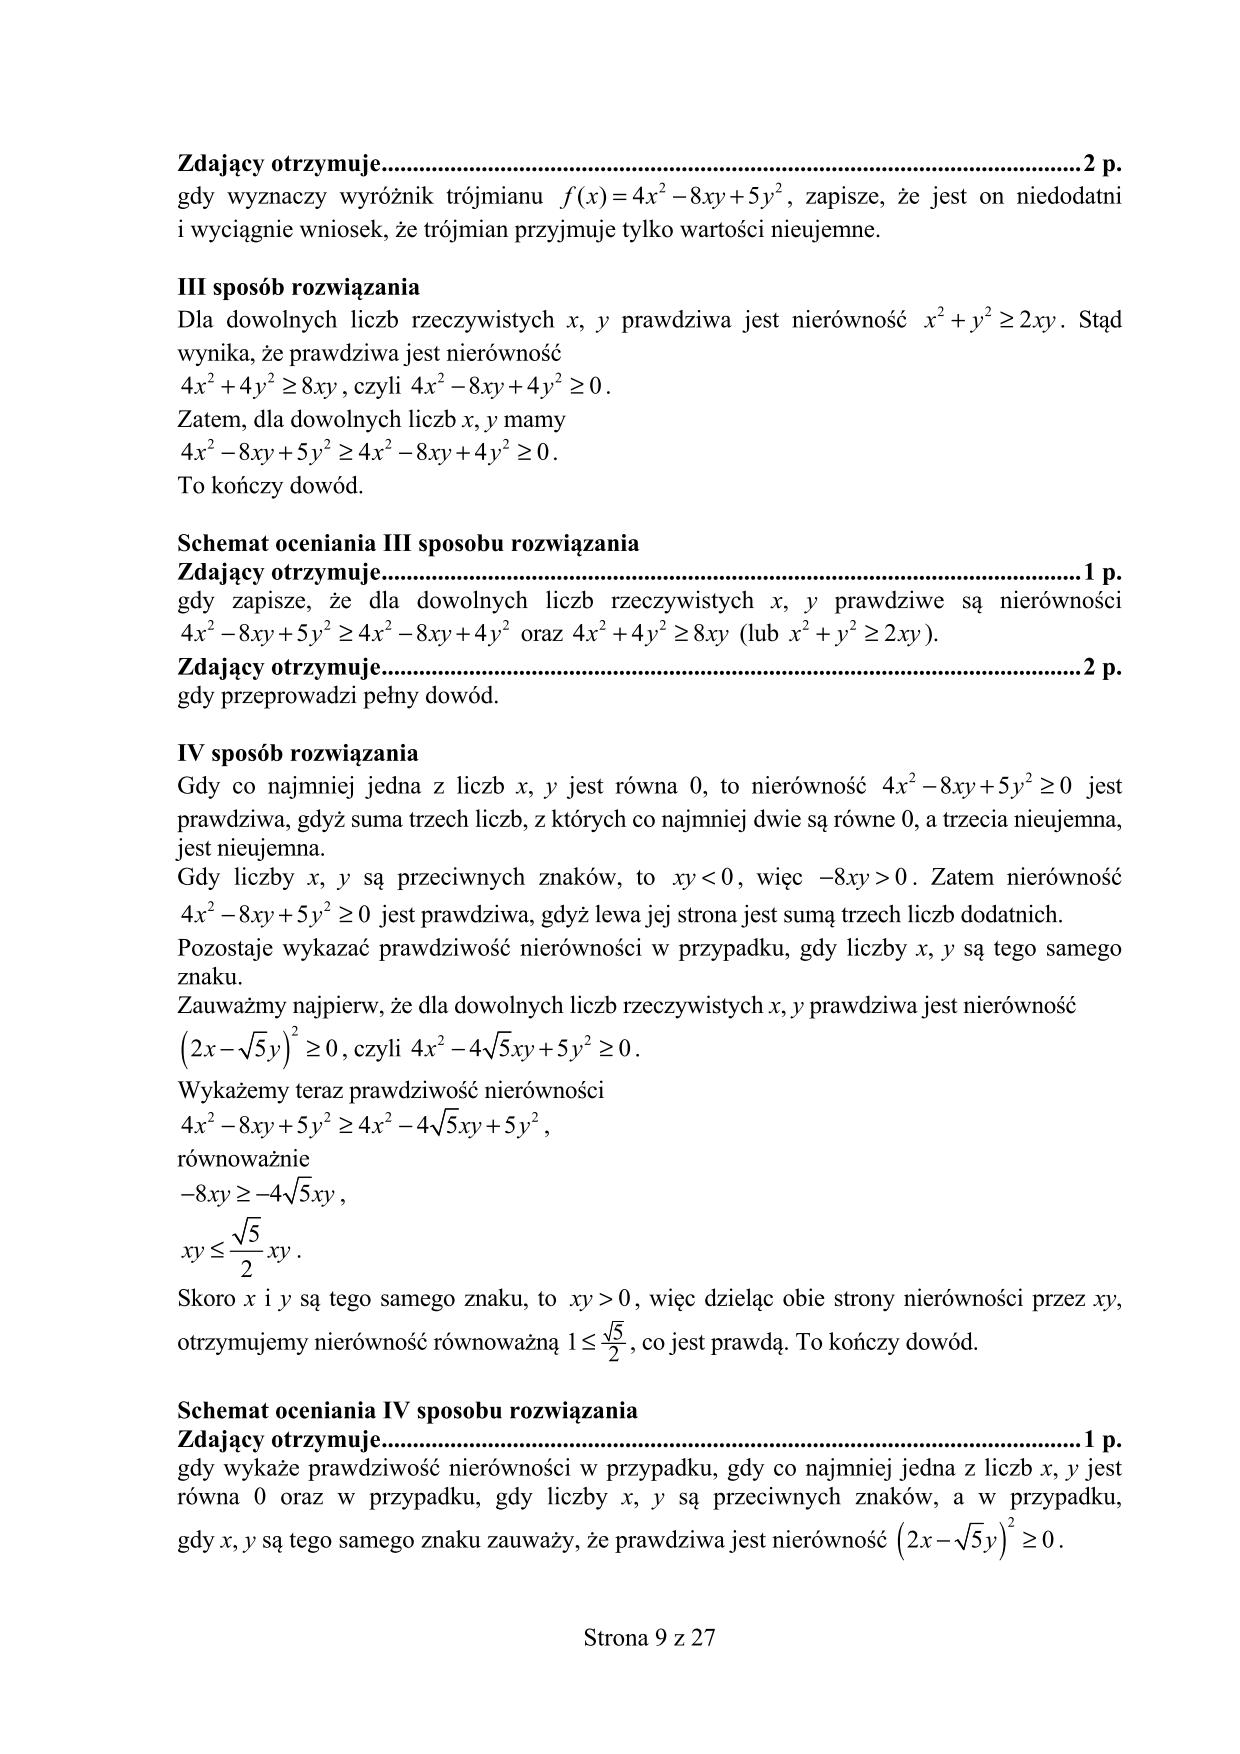 odpowiedzi-matematyka-poziom-podstawowy-matura-2015-9